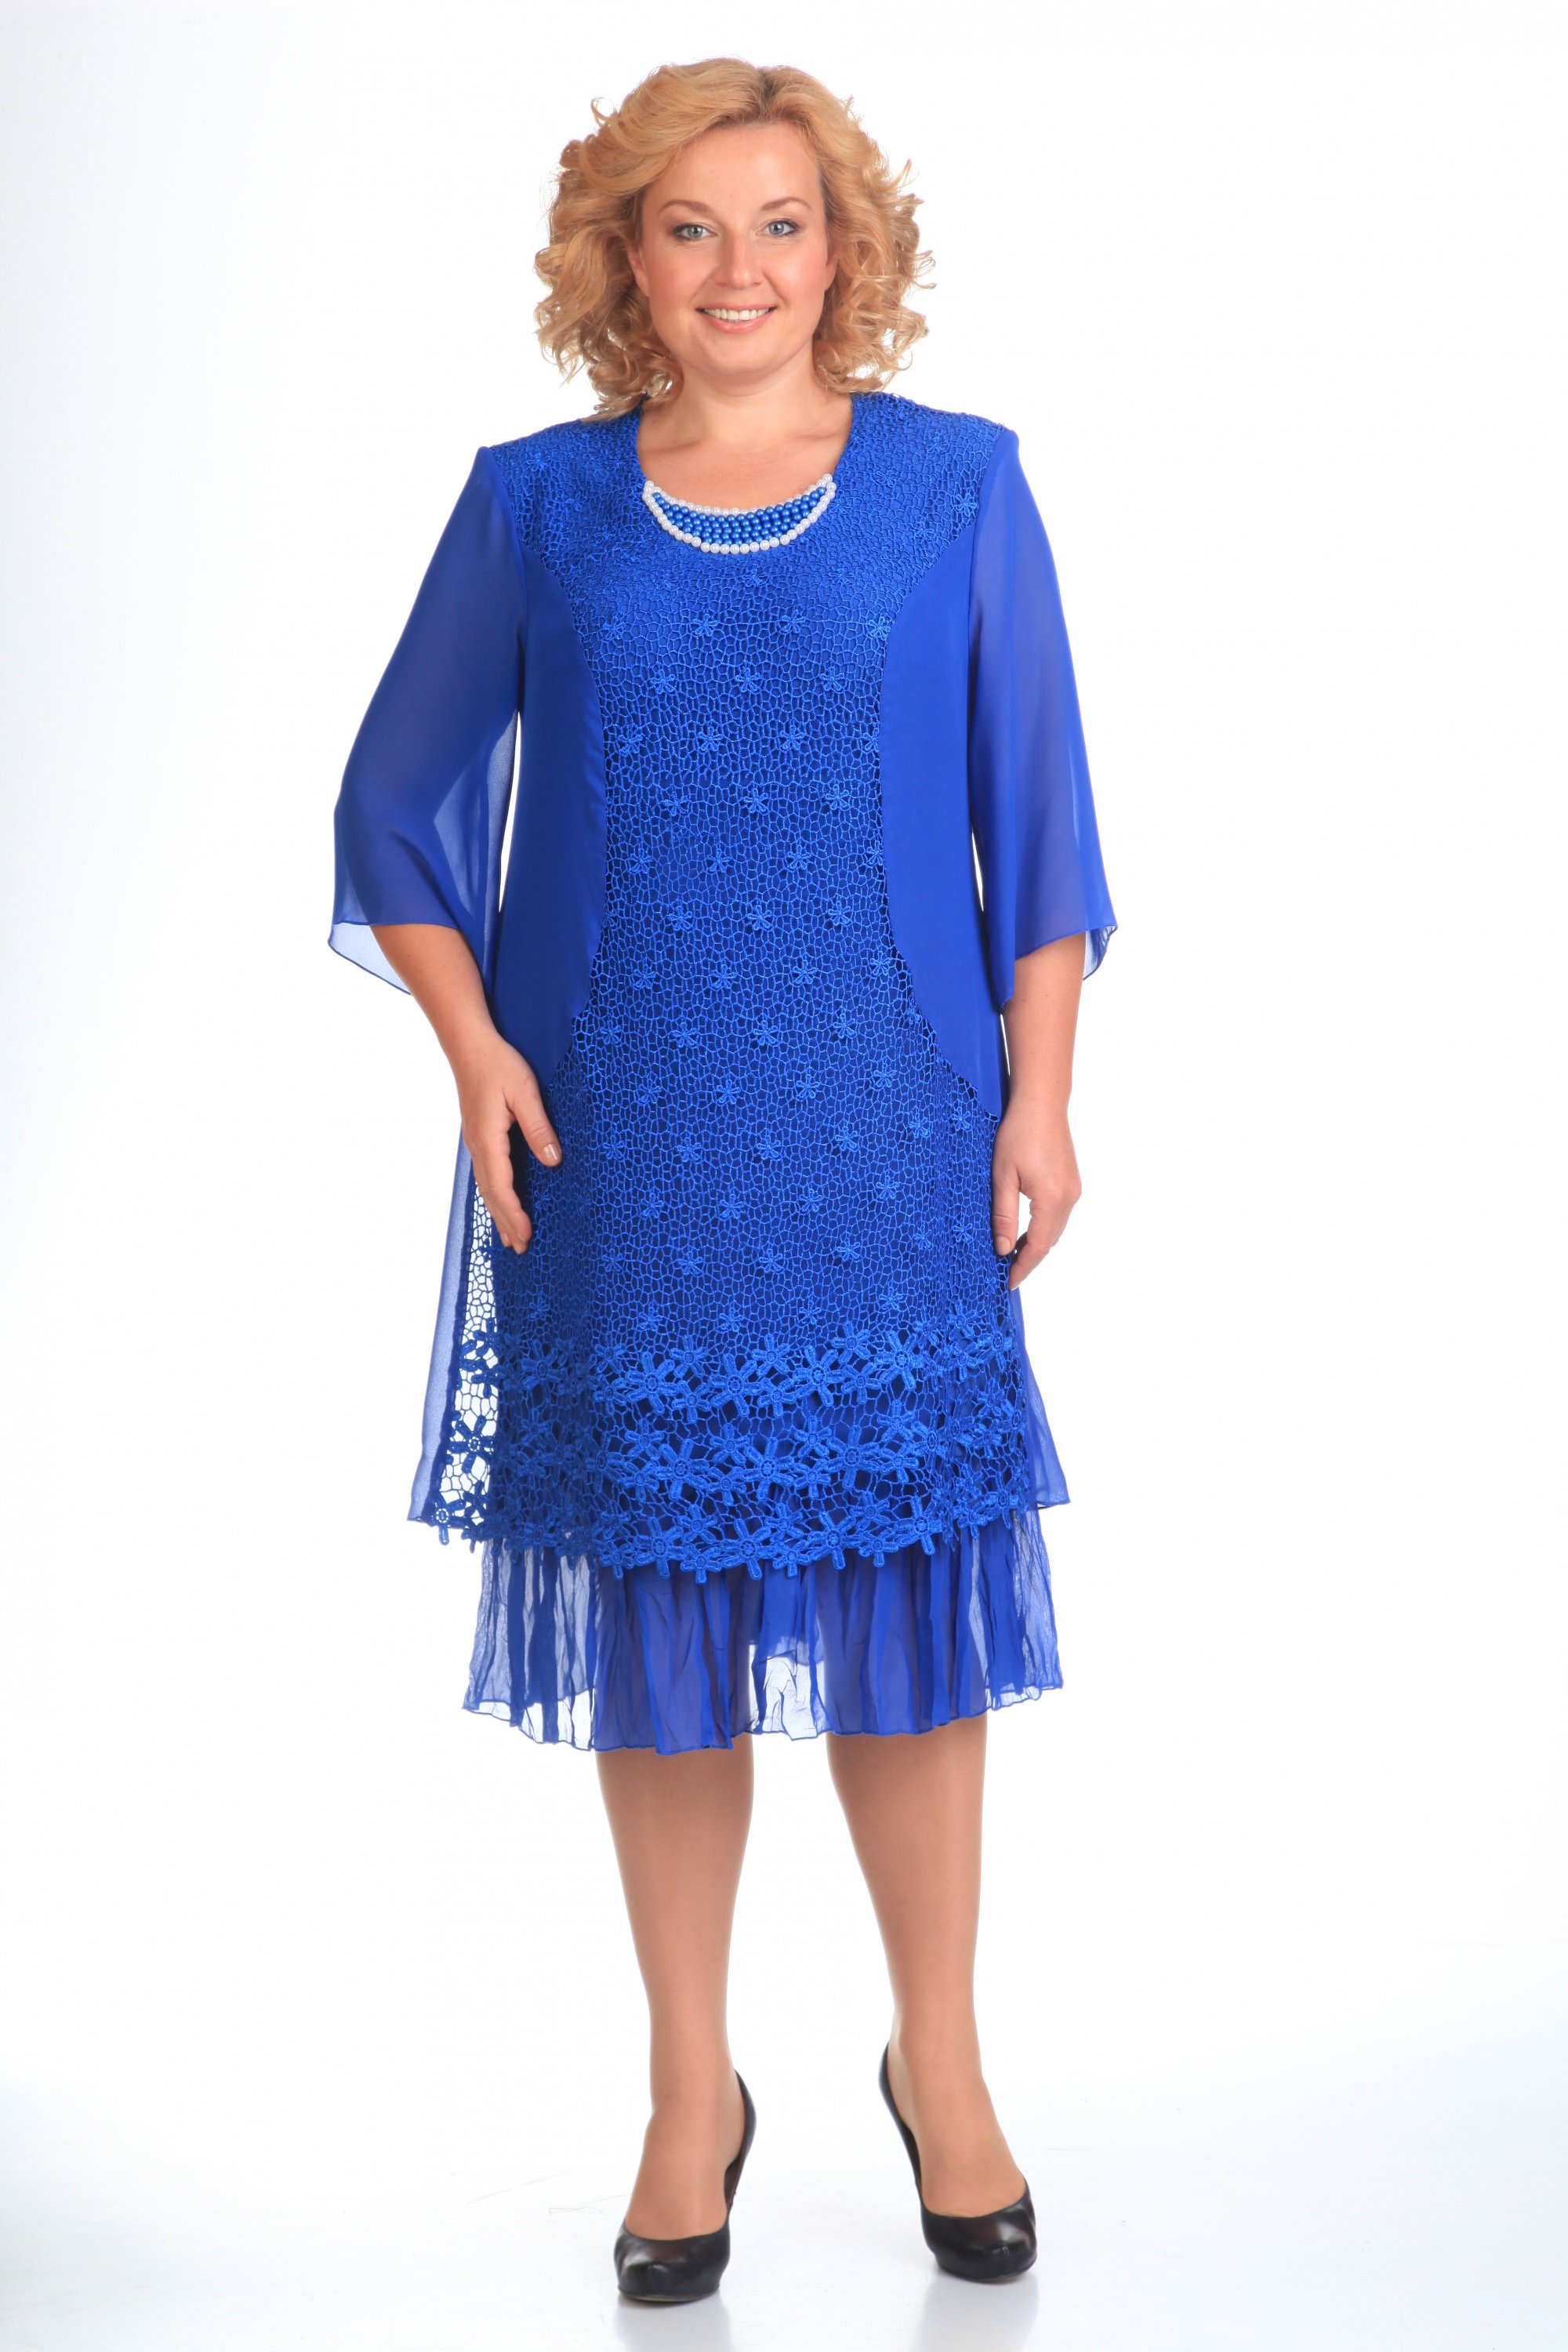 Купить платья нарядные большого размера недорогие. Платье Претти производитель Белоруссия модель 201 к/1. Платье арт 12334 белорусский трикотаж. Нарядные платья для женщин. Женские платья больших размеров.